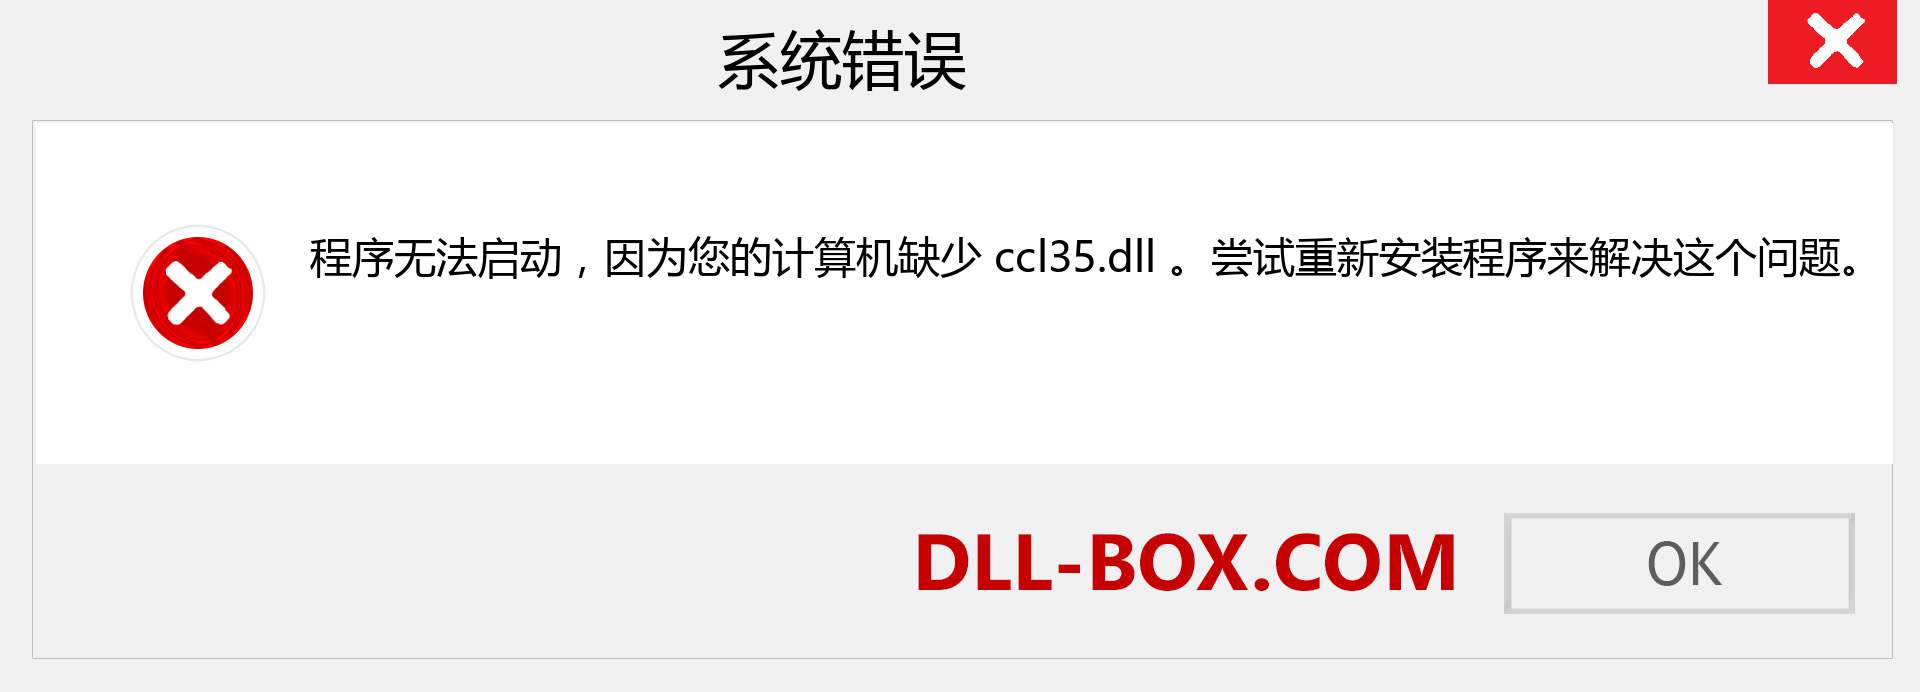 ccl35.dll 文件丢失？。 适用于 Windows 7、8、10 的下载 - 修复 Windows、照片、图像上的 ccl35 dll 丢失错误